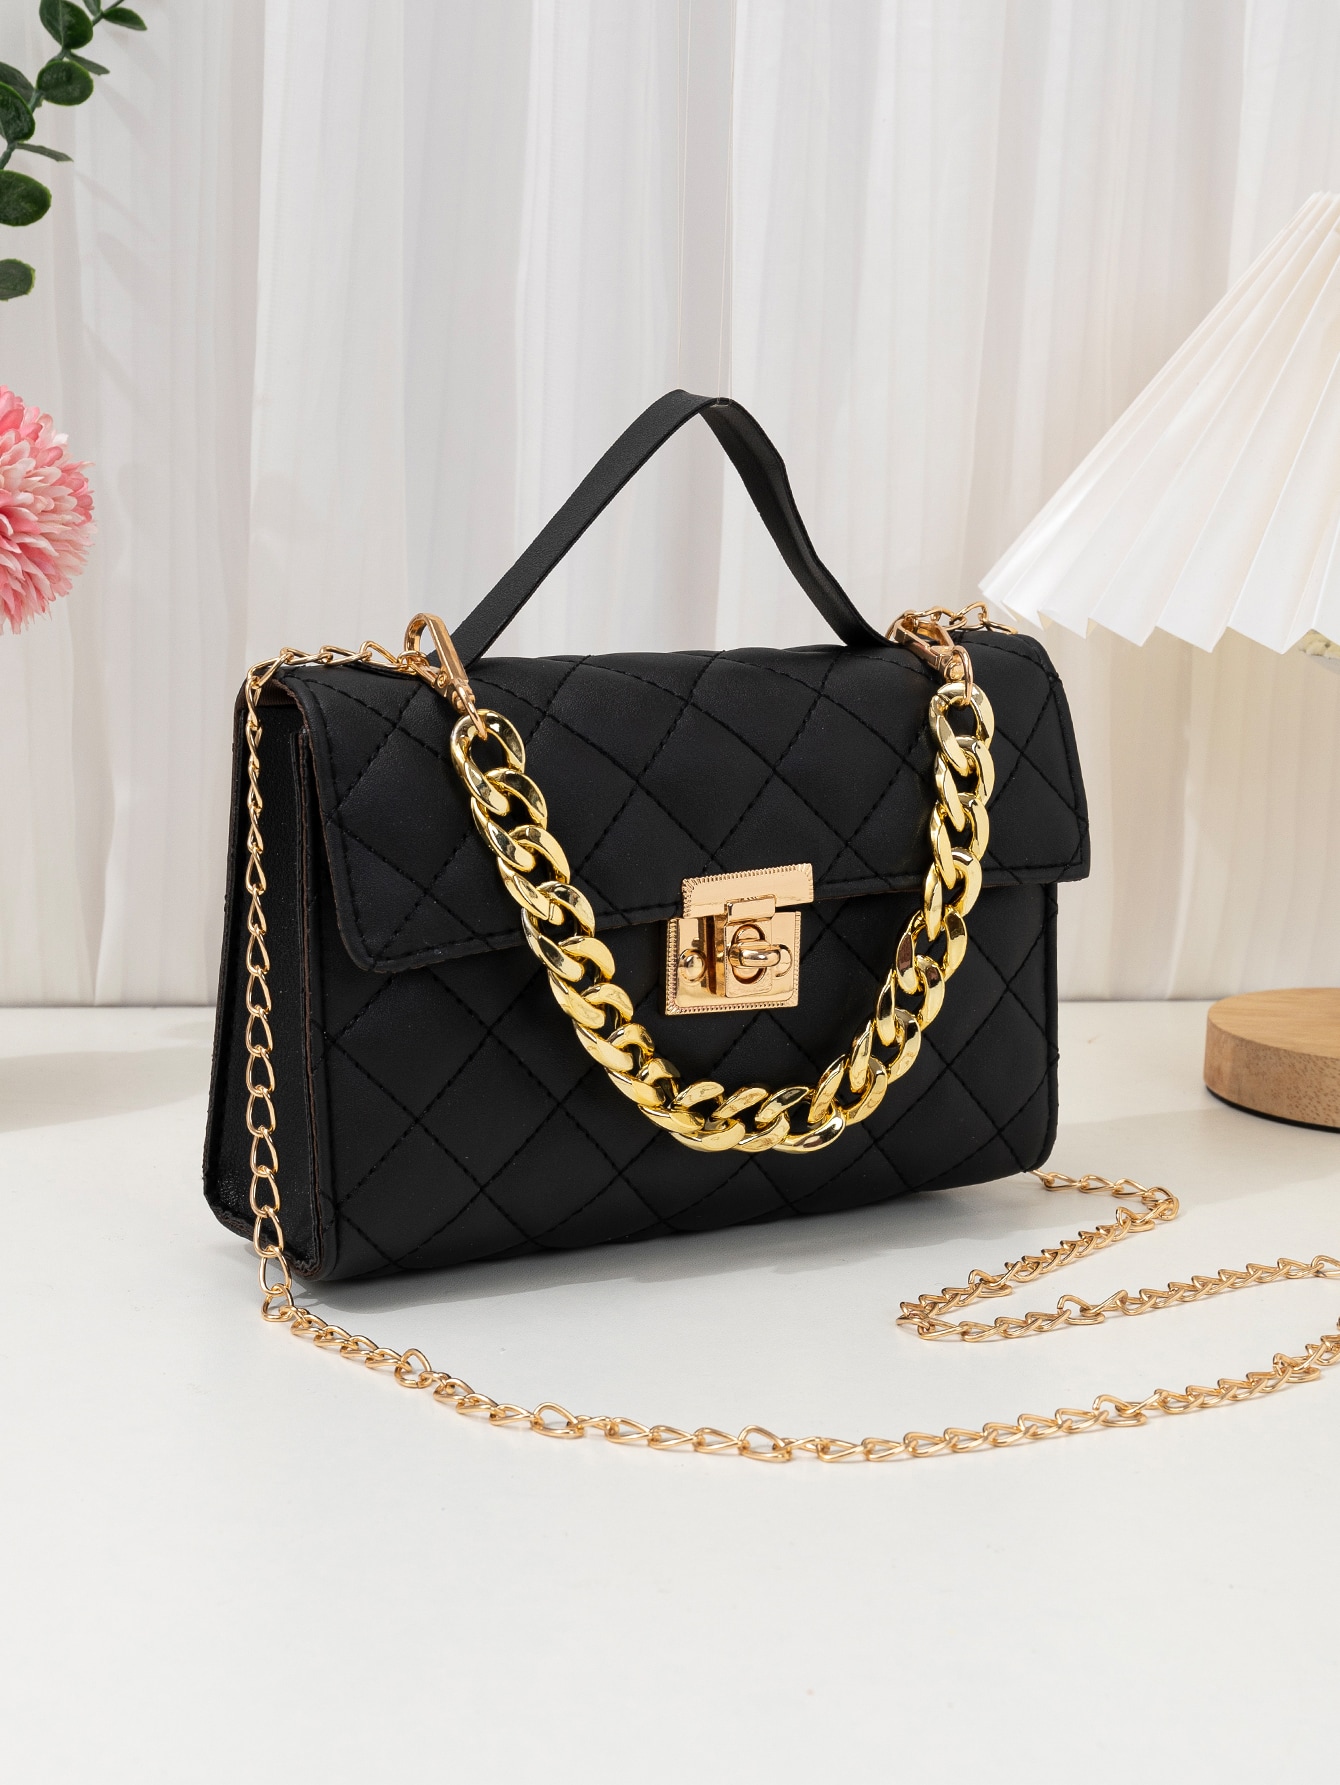 Стеганая квадратная сумка с декором на цепочке, сумка-саквояж для женщин, черный сумка саквояж polina